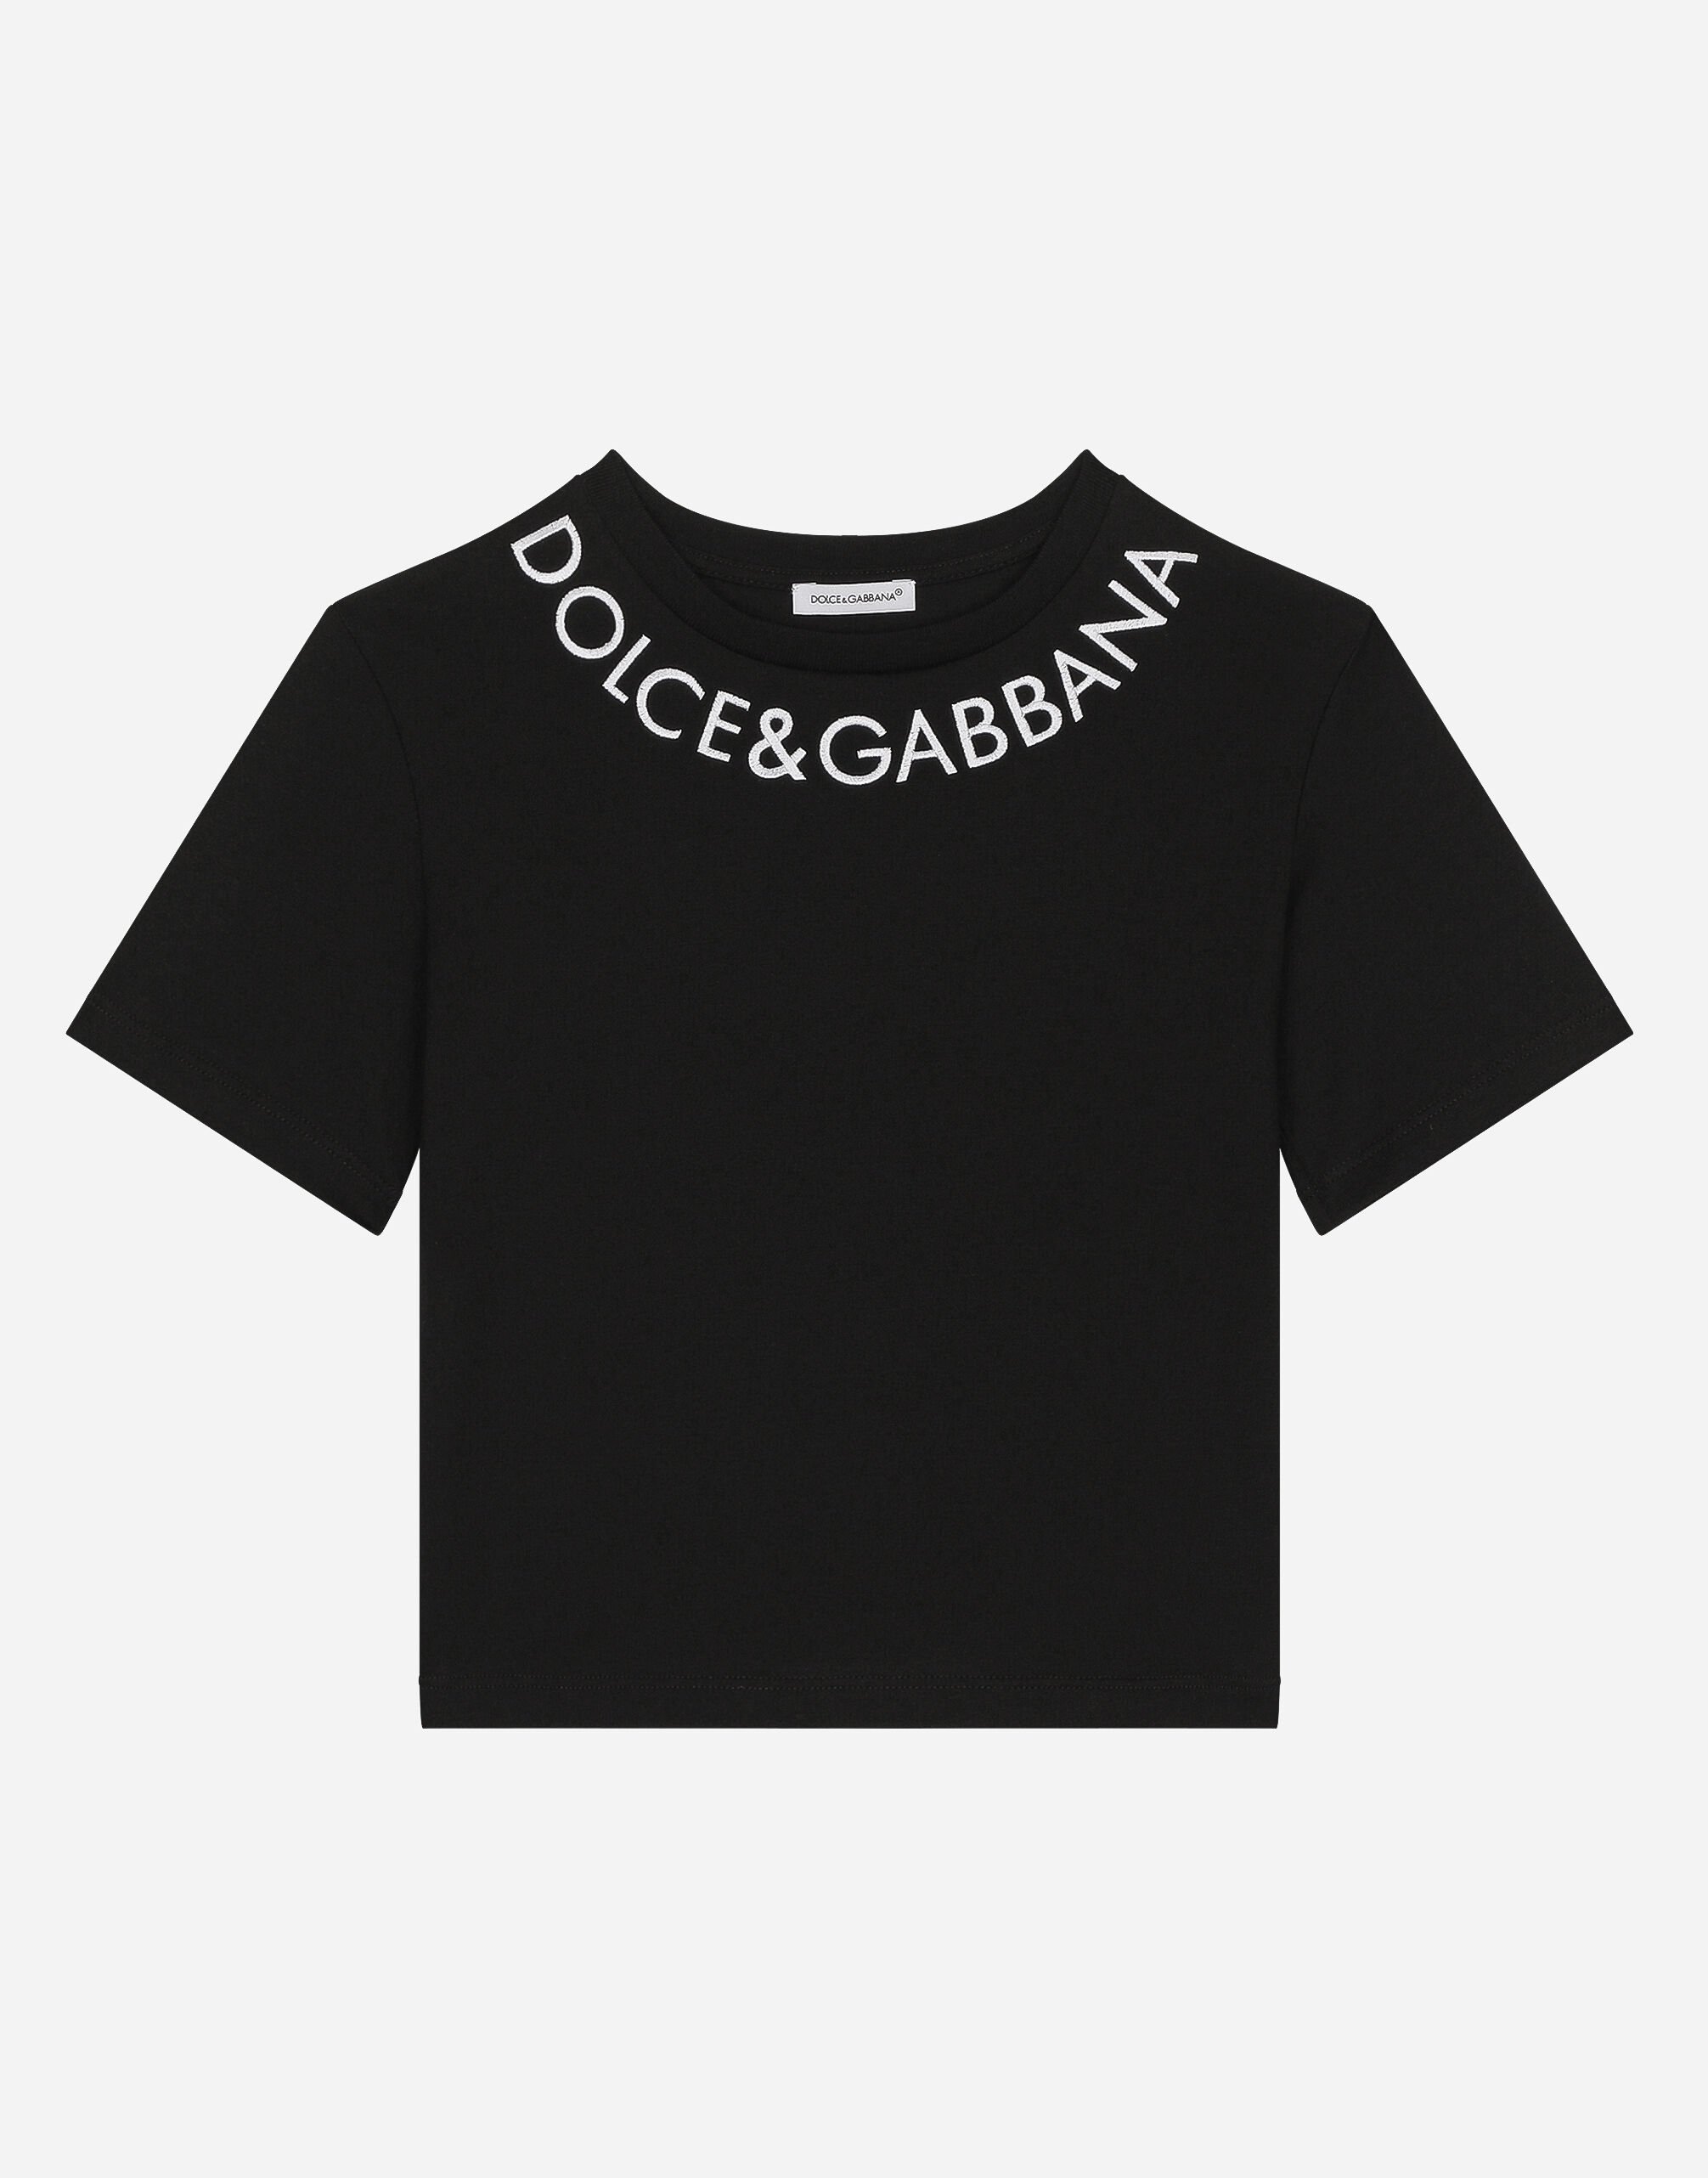 Dolce & Gabbana Jersey T-shirt with Dolce&Gabbana logo Multicolor L5JTNSG7NRH